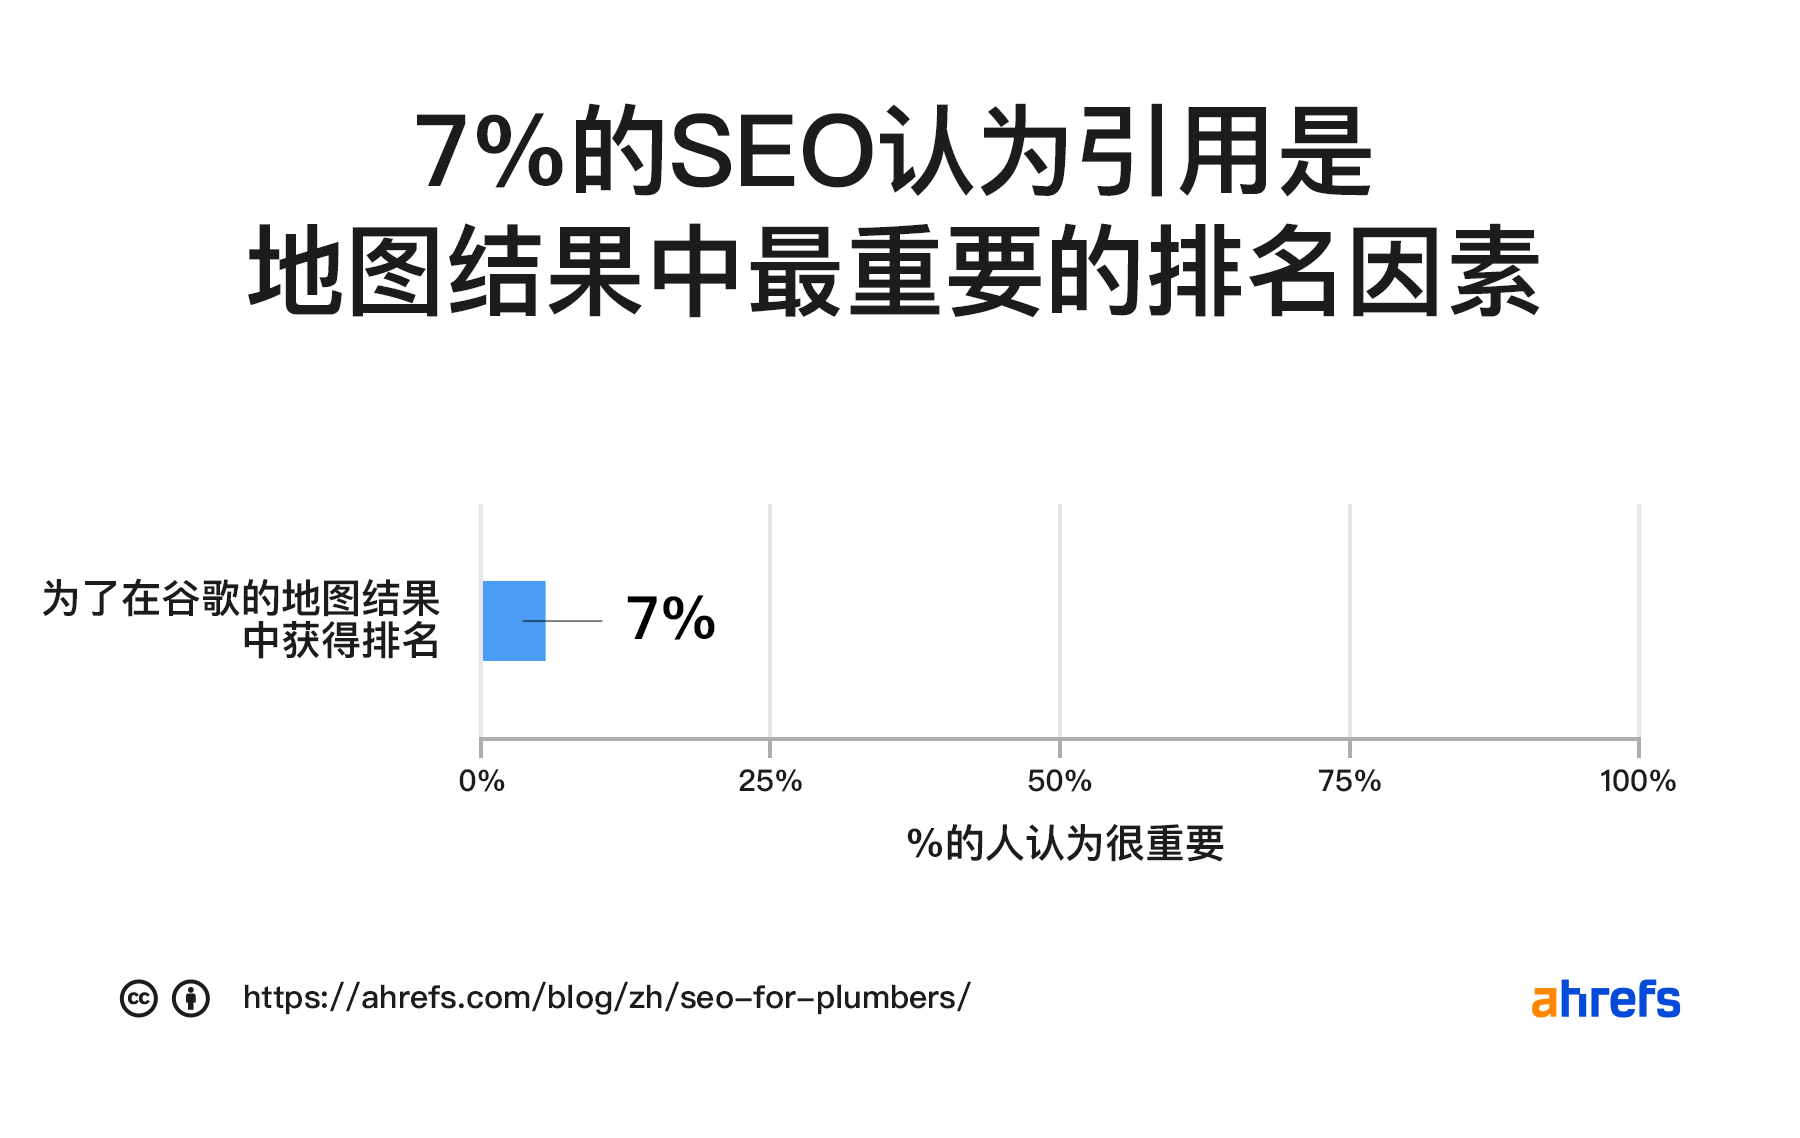 7% 的 SEO 认为引用是地图包最重要的排名因素